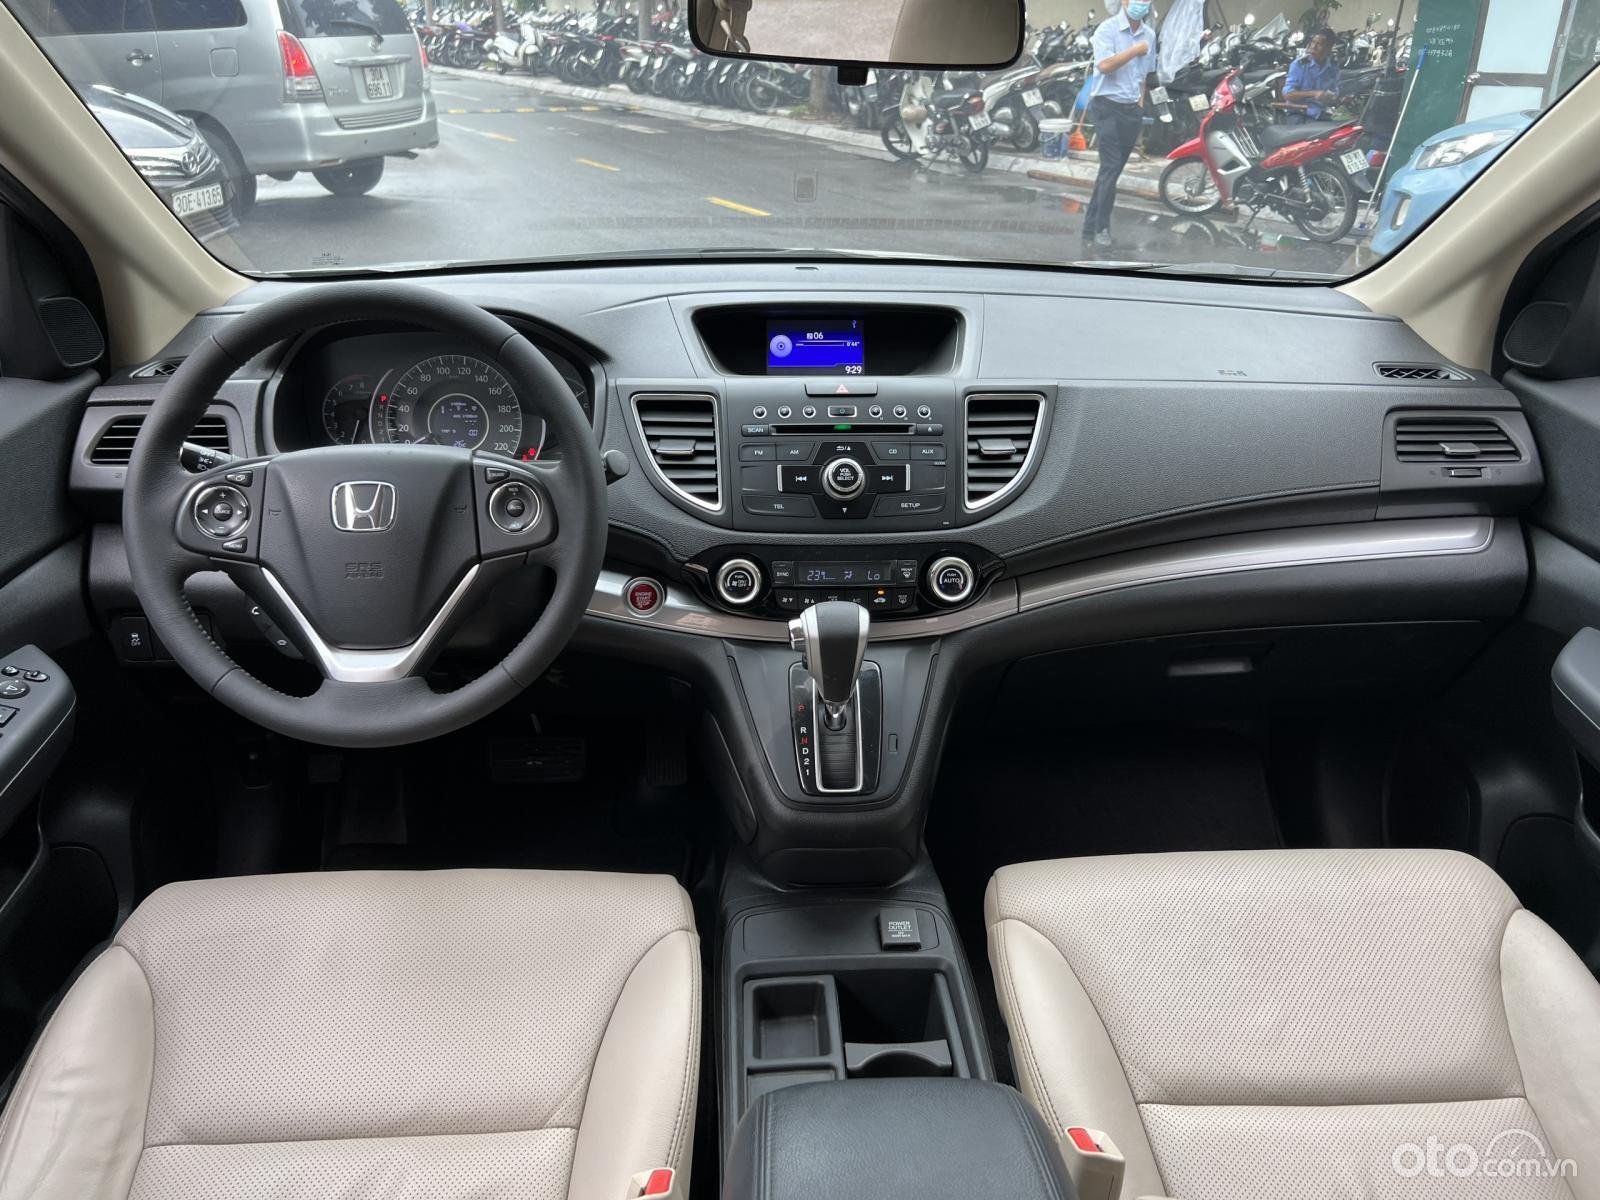 Honda CR-V 2015 cũ sở hữu không gian nội thất rộng rãi gần như dẫn đầu phân khúc